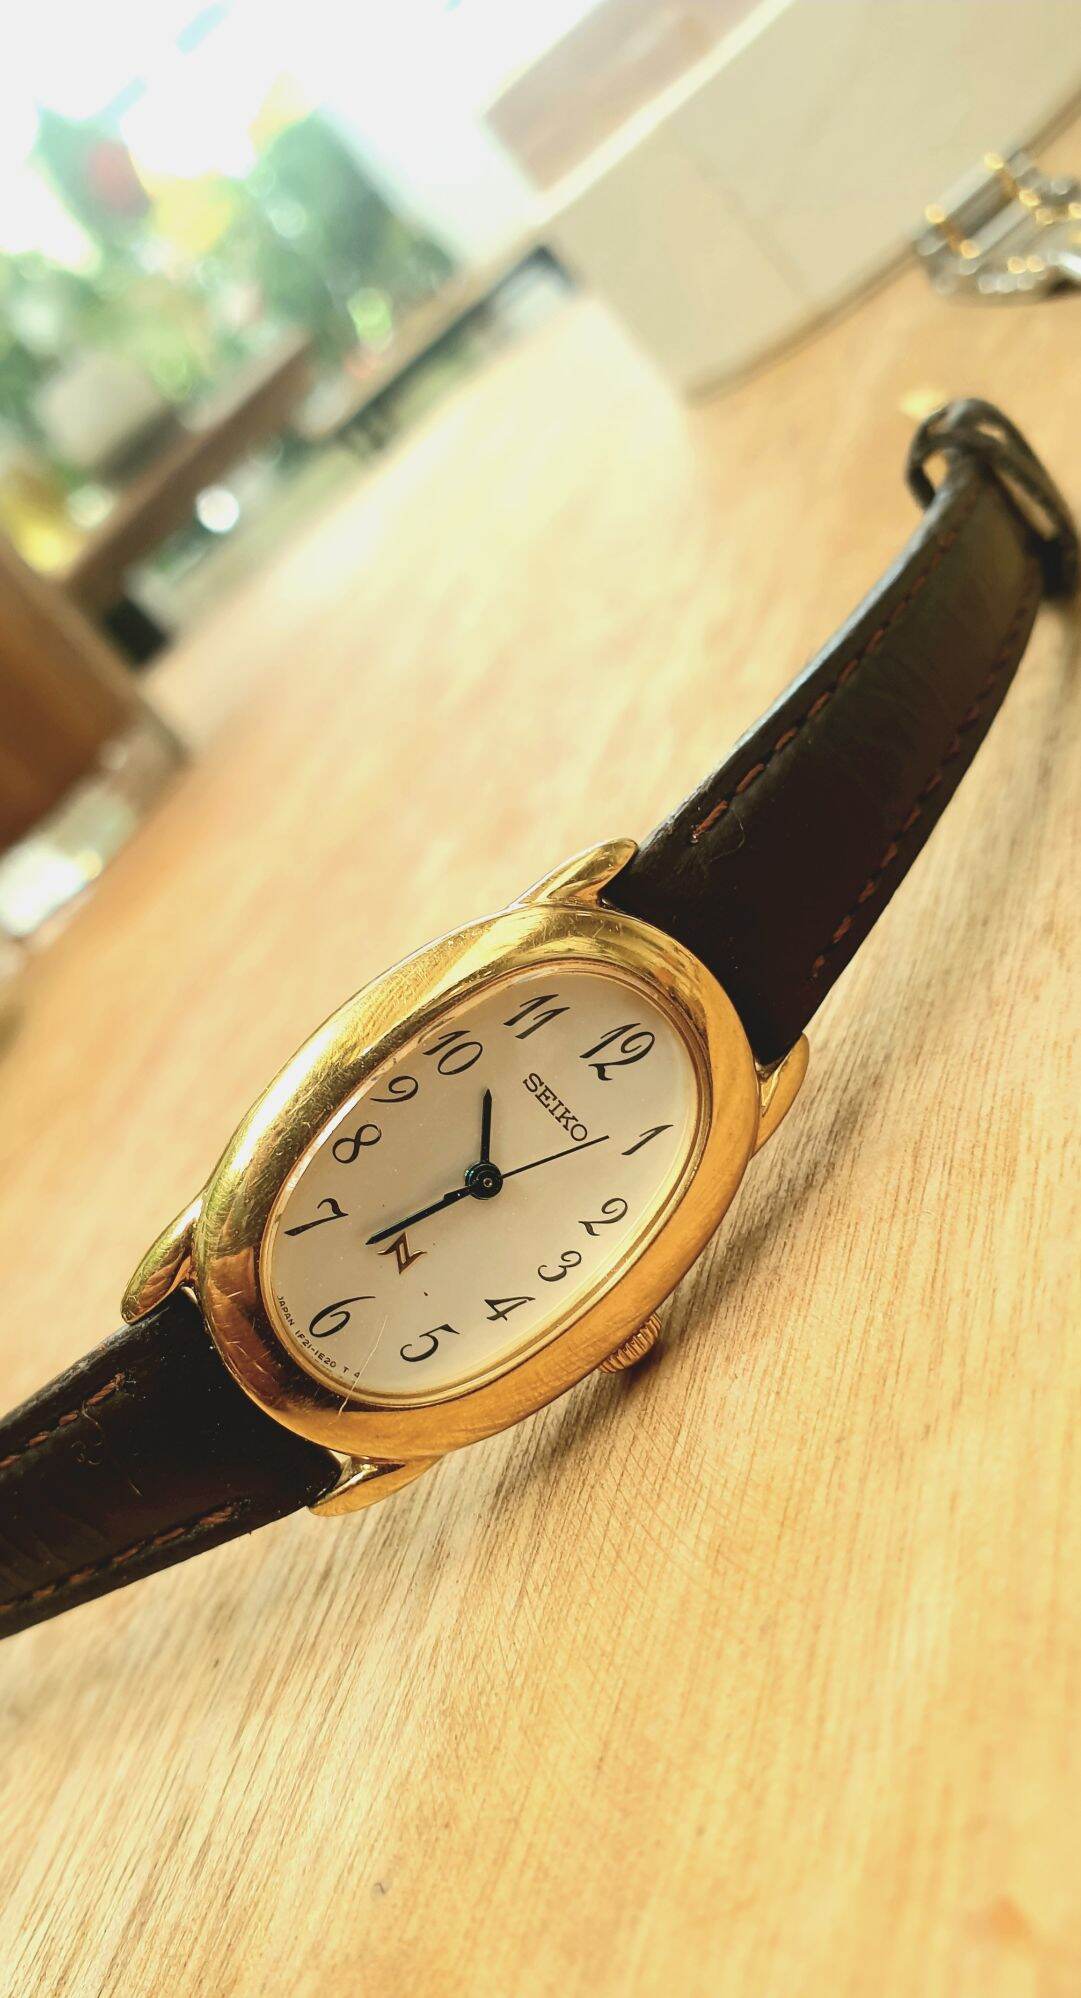 đồng hồ si chính hãng Seiko N dáng hột xoài cho nữ